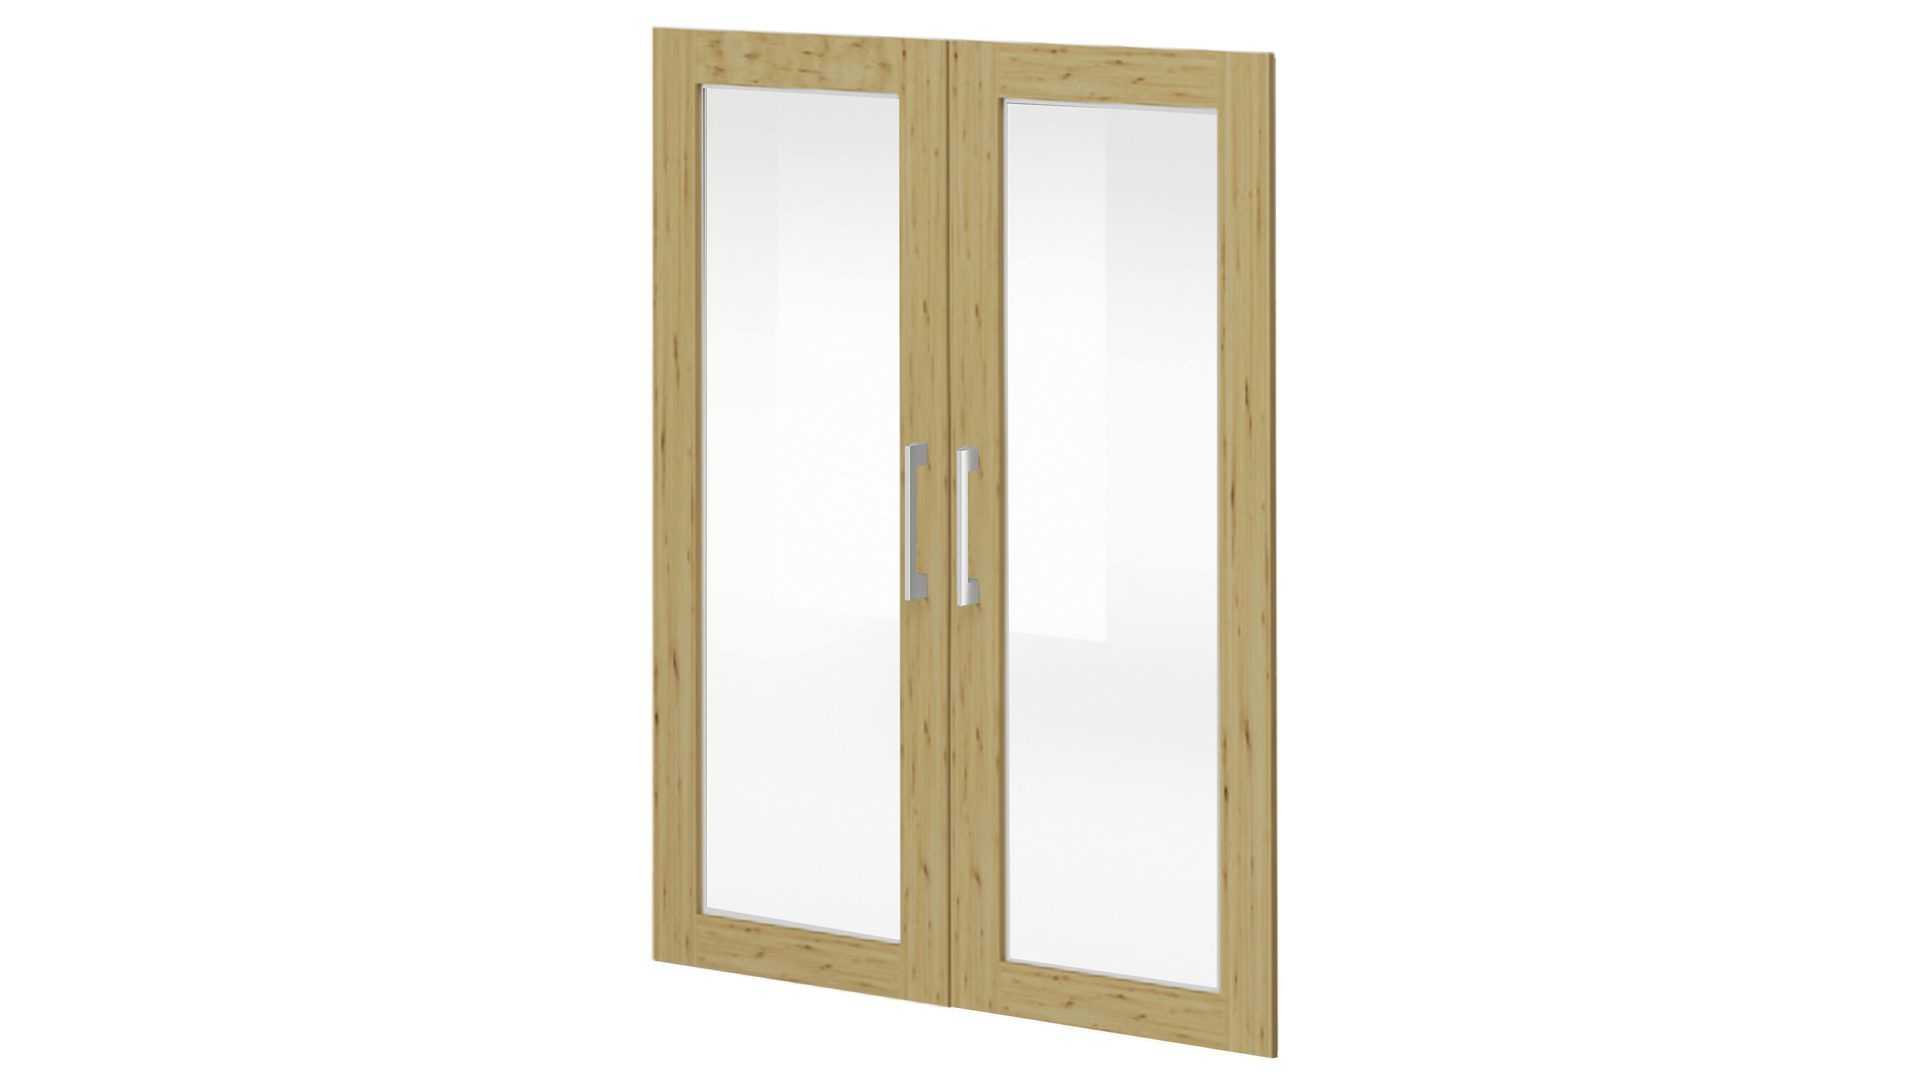 Türen-Set Mäusbacher aus Holz in Holzfarben Büroprogramm Big Profi Office - 2er-Set Türen Asteiche & Glas - zwei Türen, ca. 77 x 104 cm